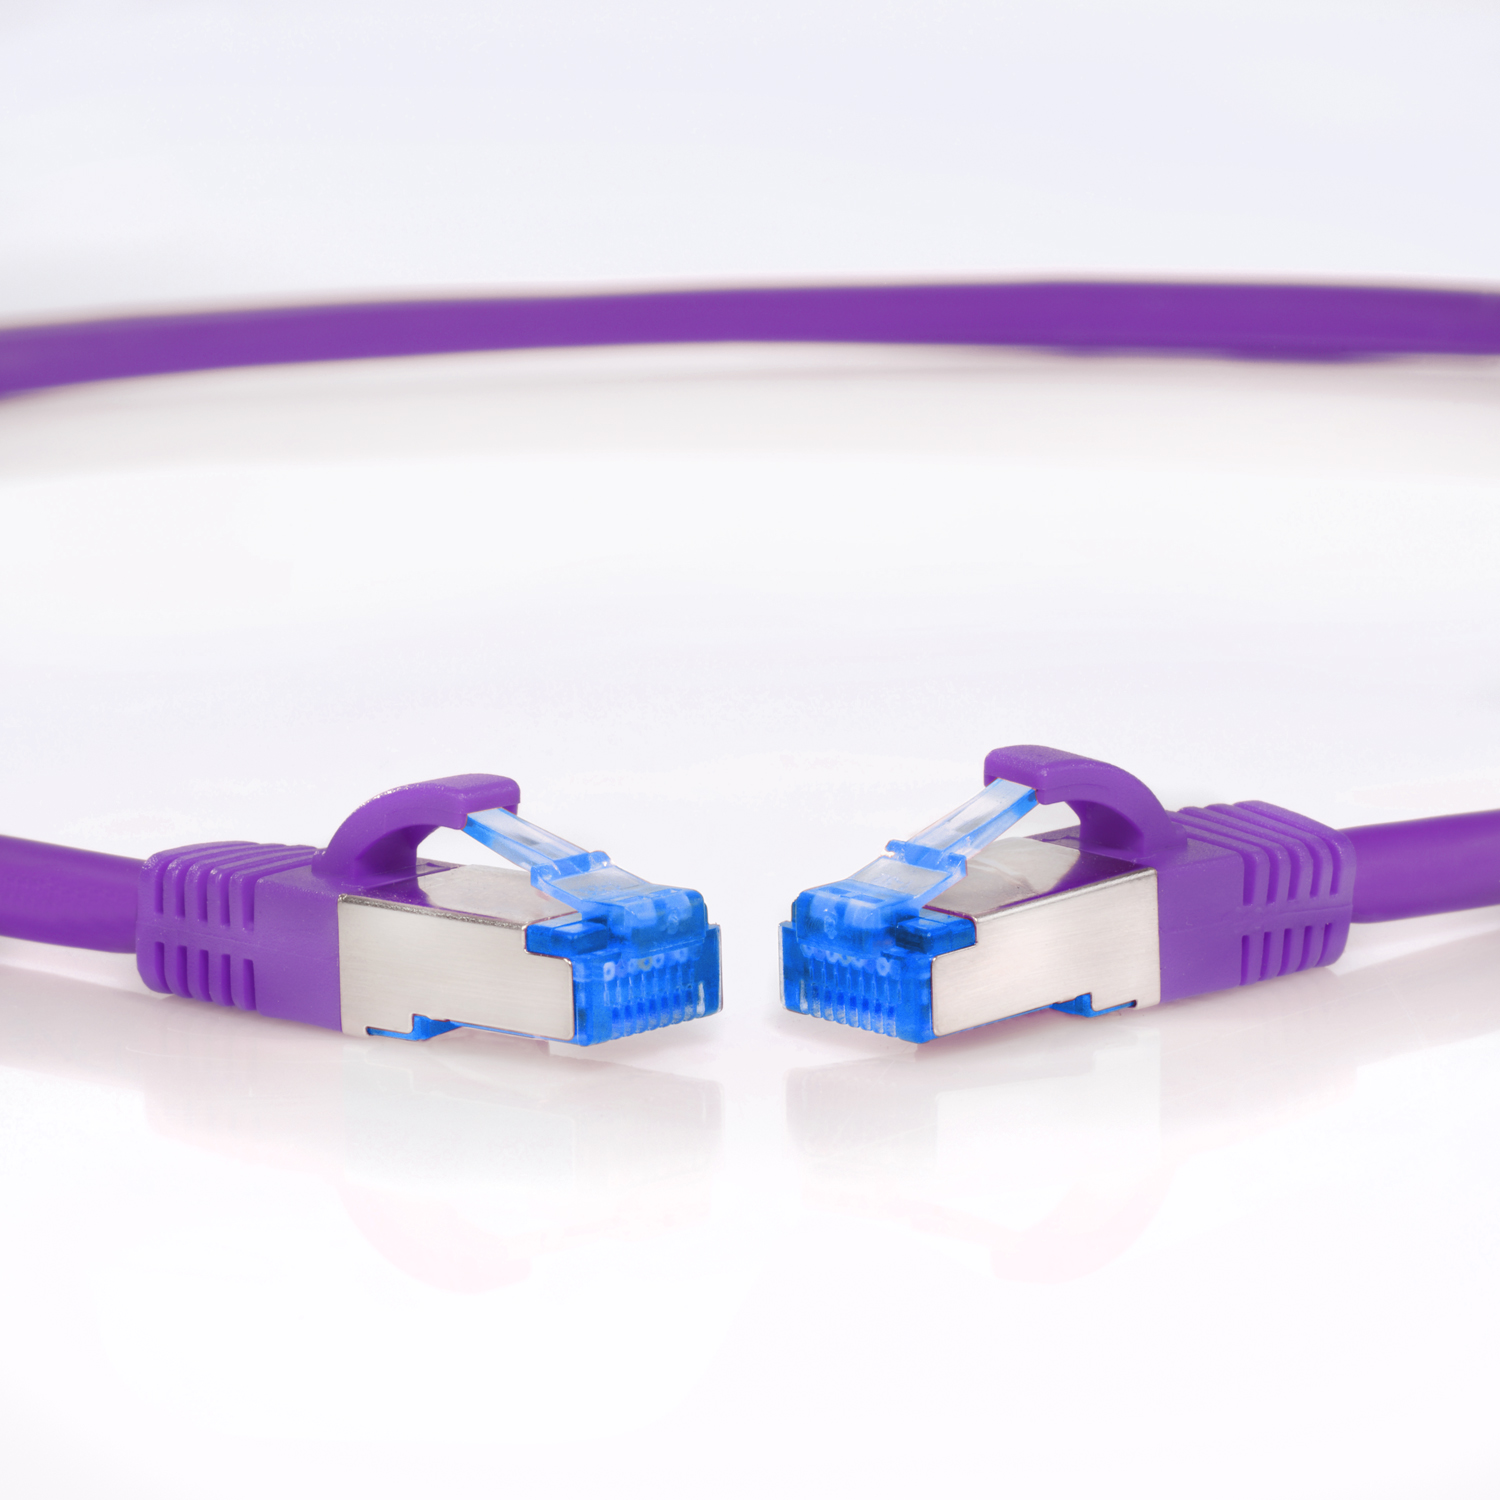 TPFNET 15m Patchkabel / Netzwerkkabel 10GBit, m Netzwerkkabel, violett, S/FTP 15